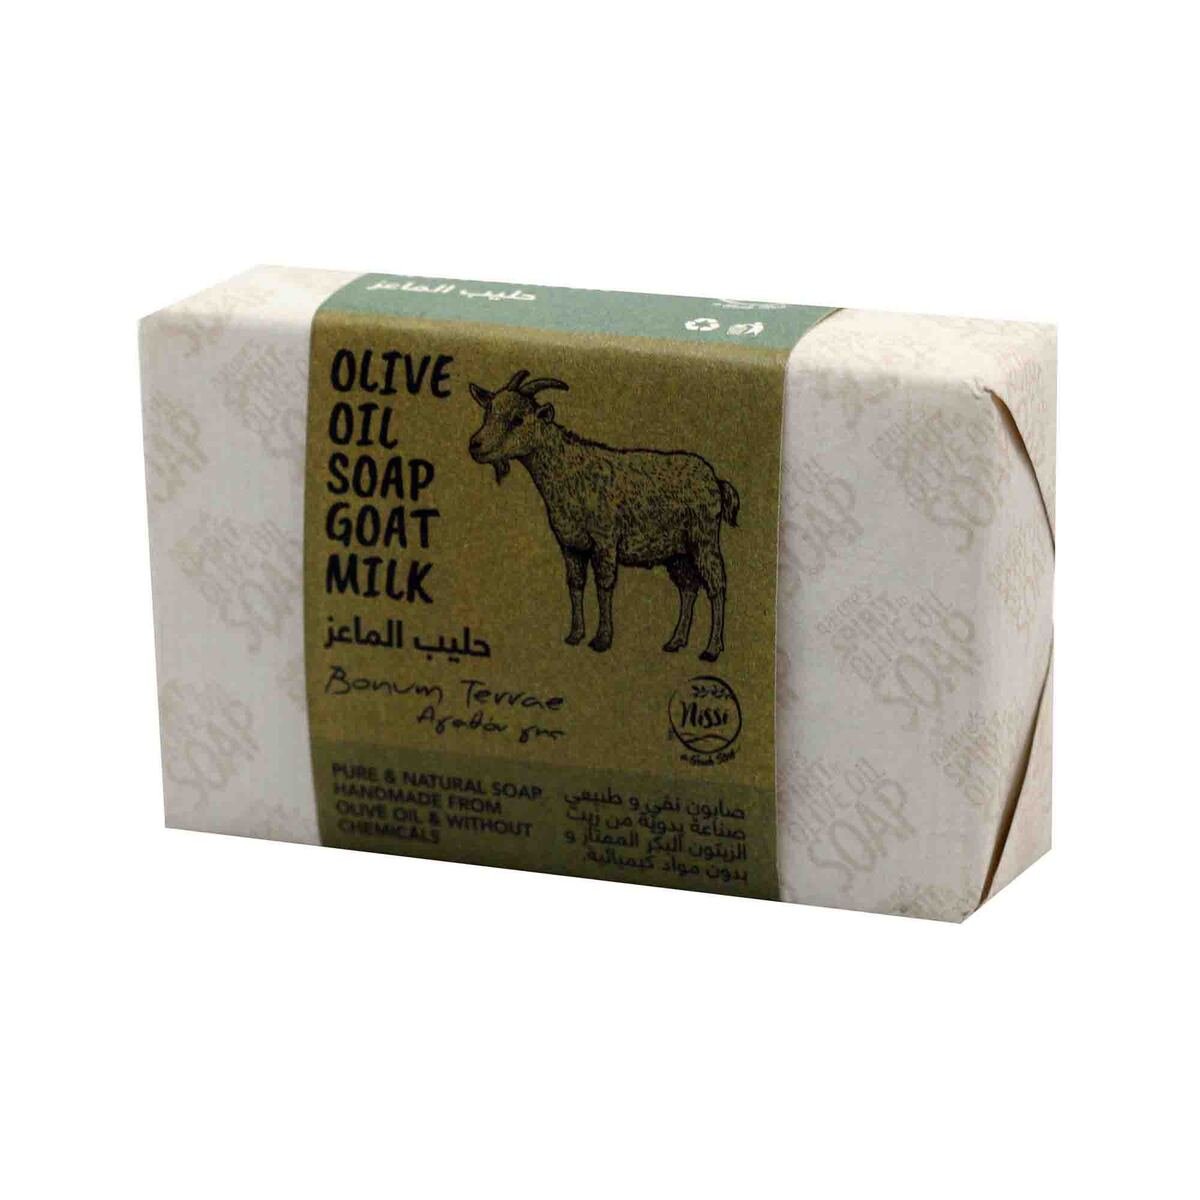 Bonum Terrae Soap Olive Oil Goat Milk 120g